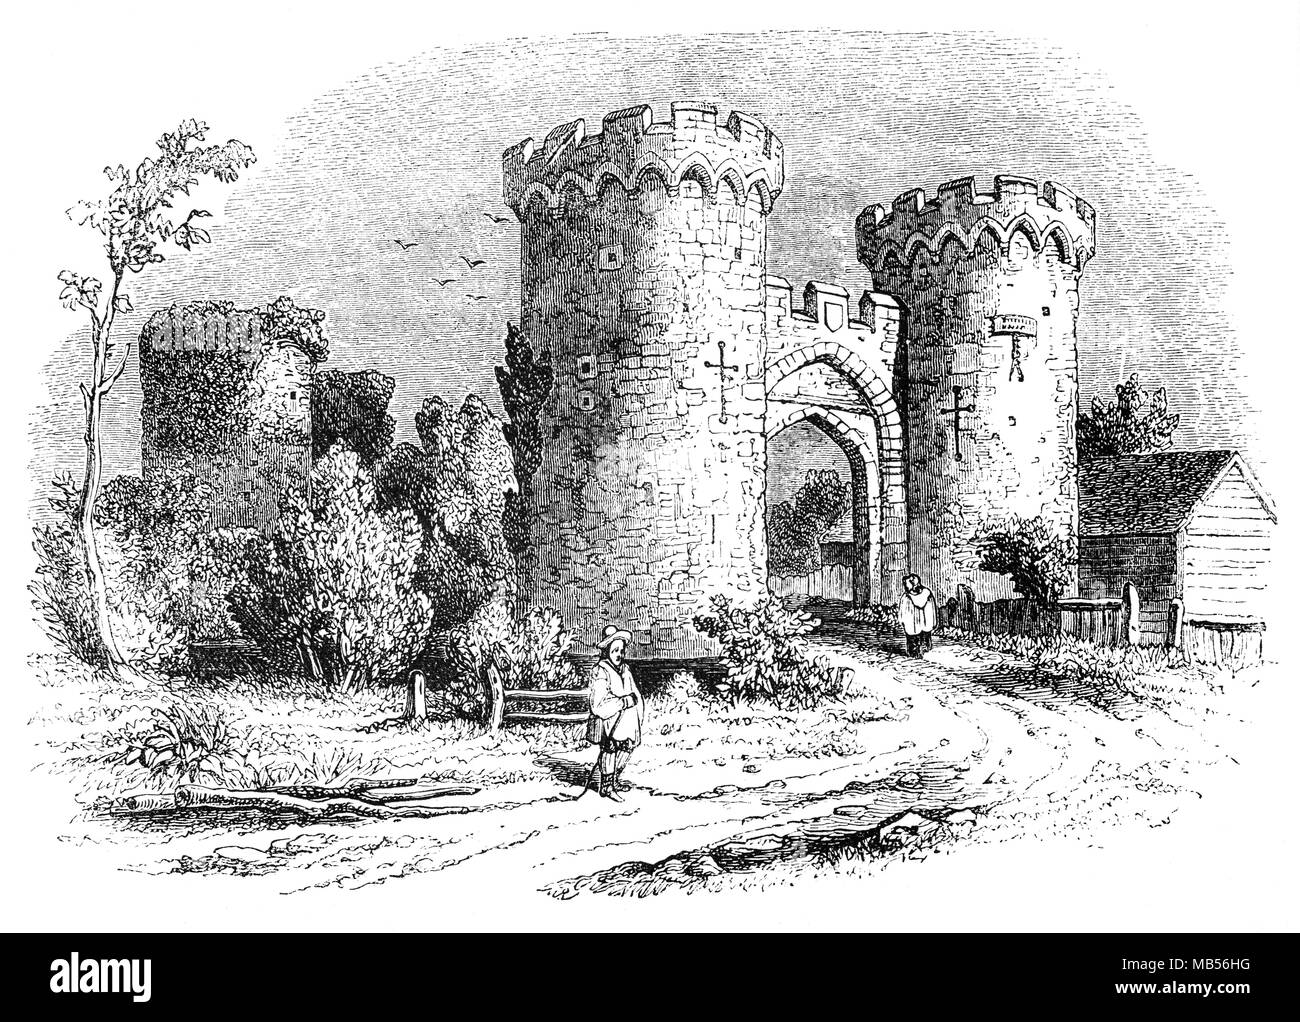 Refroidissement ou Cowling Castle est un 14e siècle château quadrangulaire dans le village de refroidissement, Kent sur la péninsule de Hoo près de Rochester. Il a été construit dans les années 1380 par la famille de Cobham, les Lords of the Manor, à la zone de protection contre les raids français dans l''estuaire de la Tamise. Le château a une disposition inhabituelle, comprenant deux salles de taille différente fortifiée à côté de l'autre, entouré de douves et fossés. Il fut le premier château anglais conçu pour l'usage de la poudre des armes par ses défenseurs. Banque D'Images